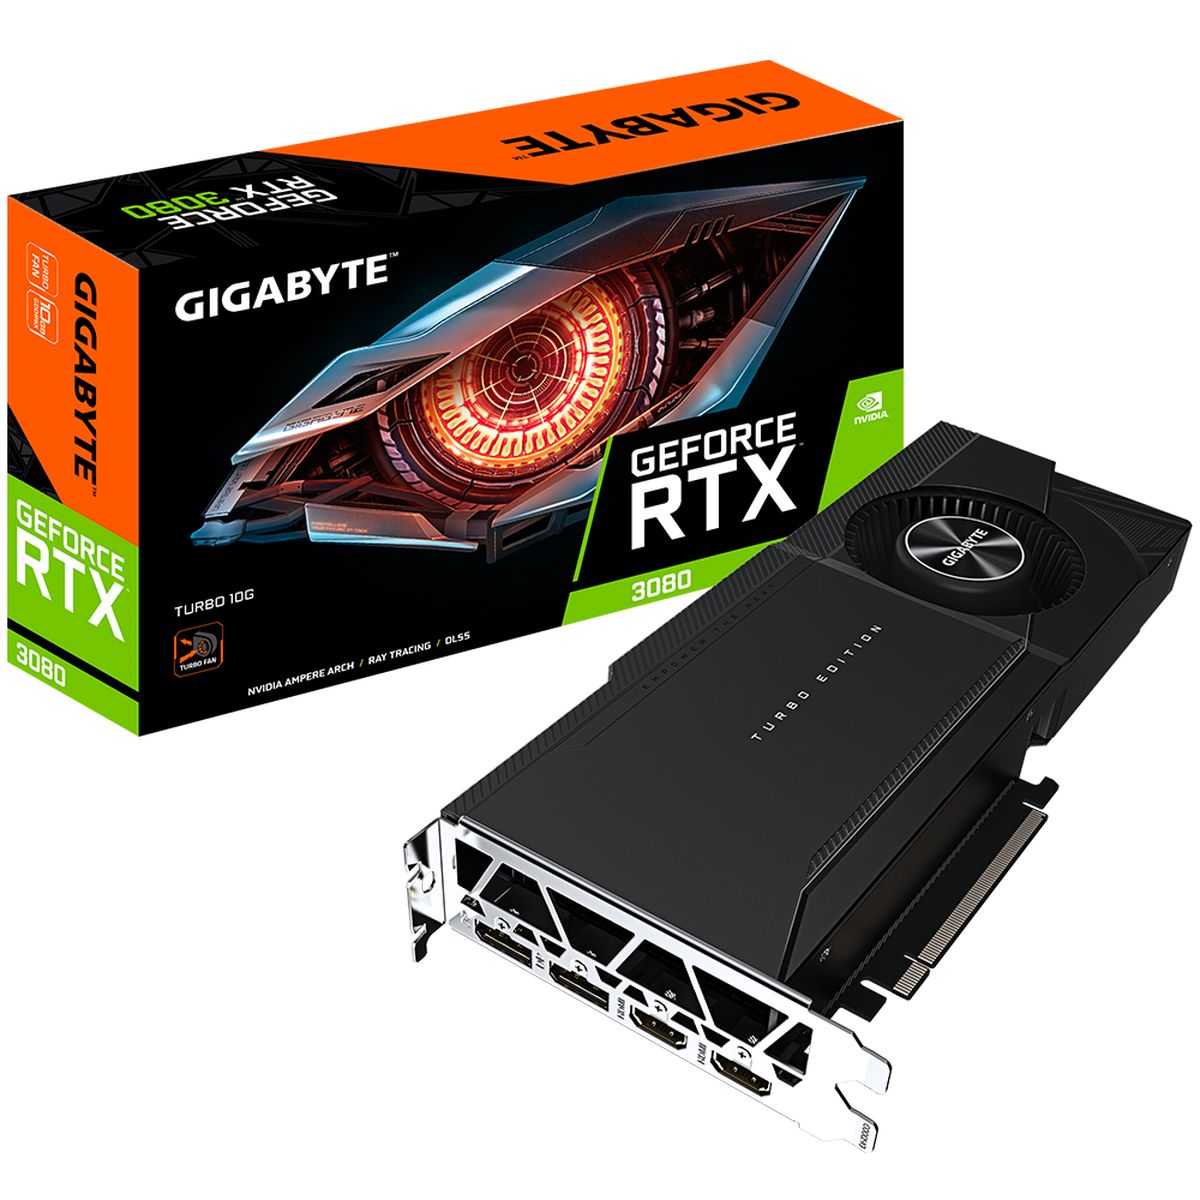  Gigabyte GeForce RTX 3080 Turbo 10G